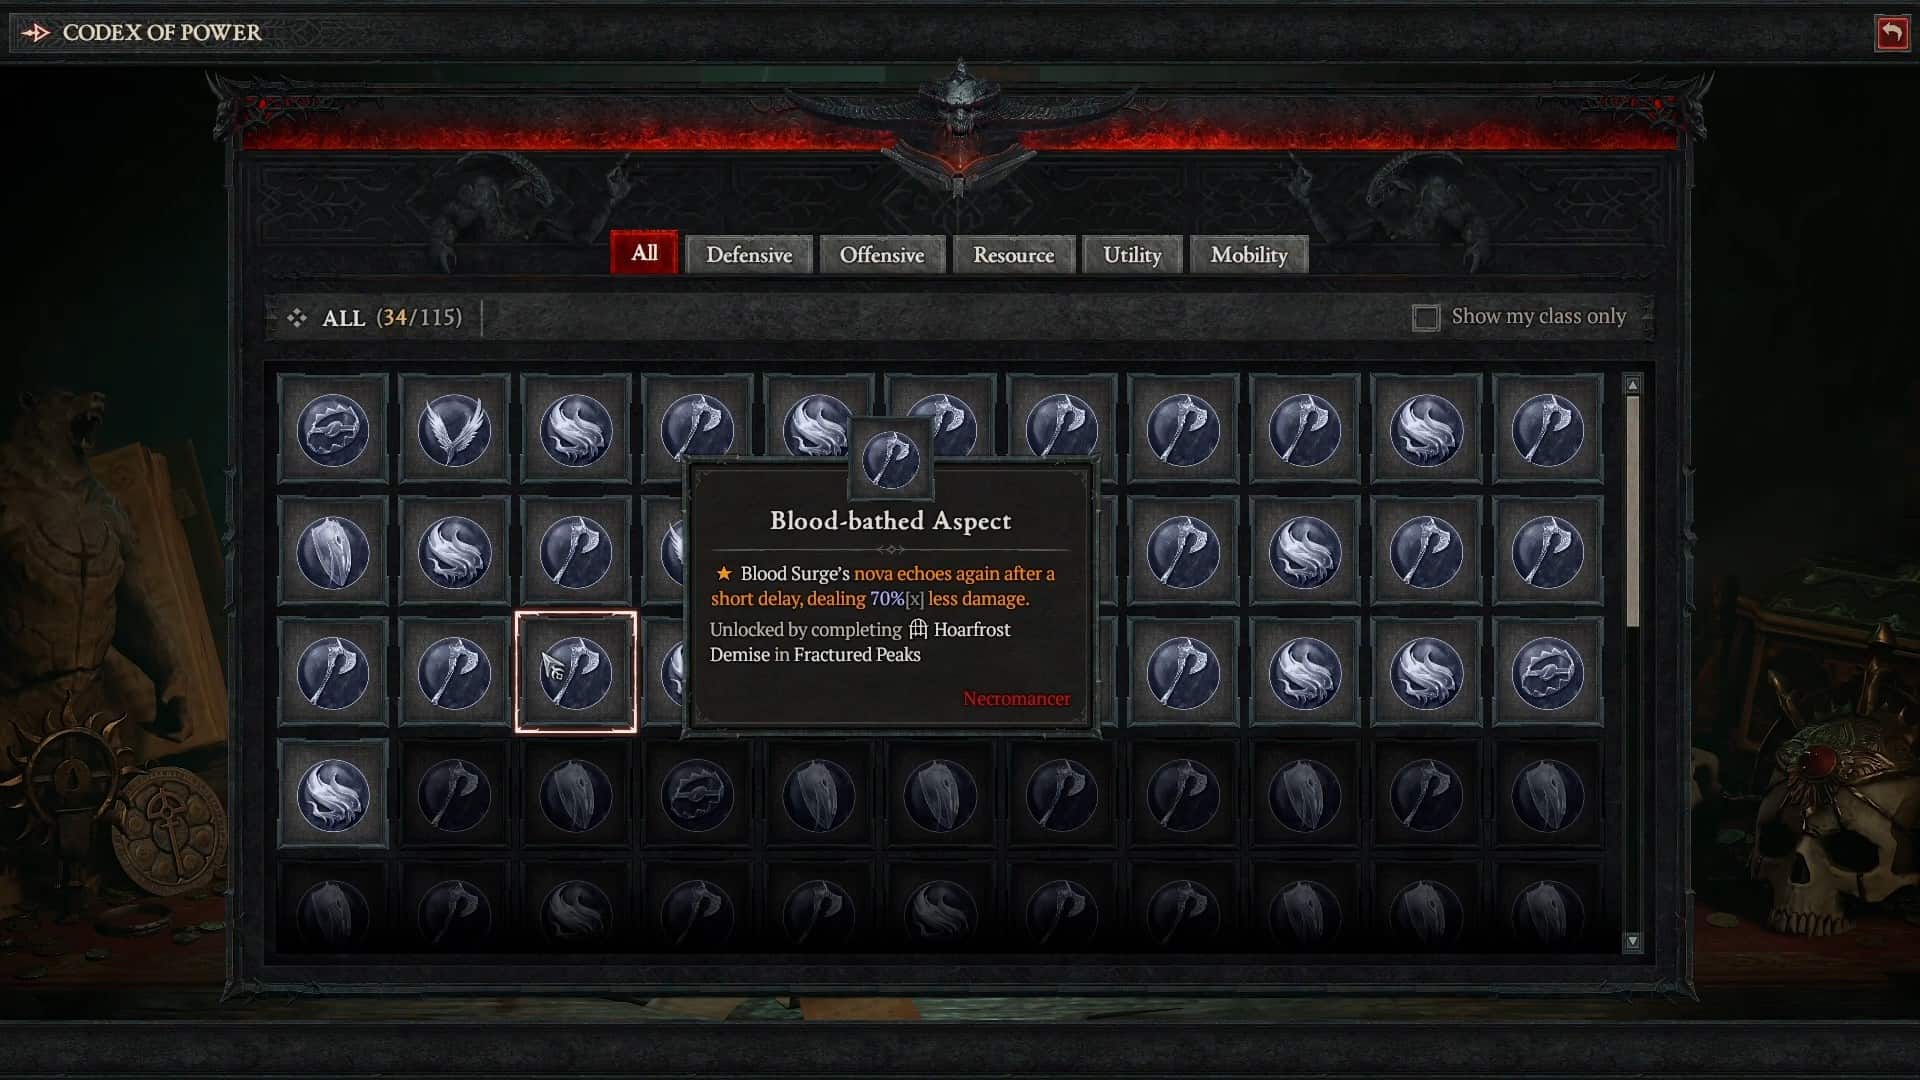 Blood-bathed Aspect in Diablo 4